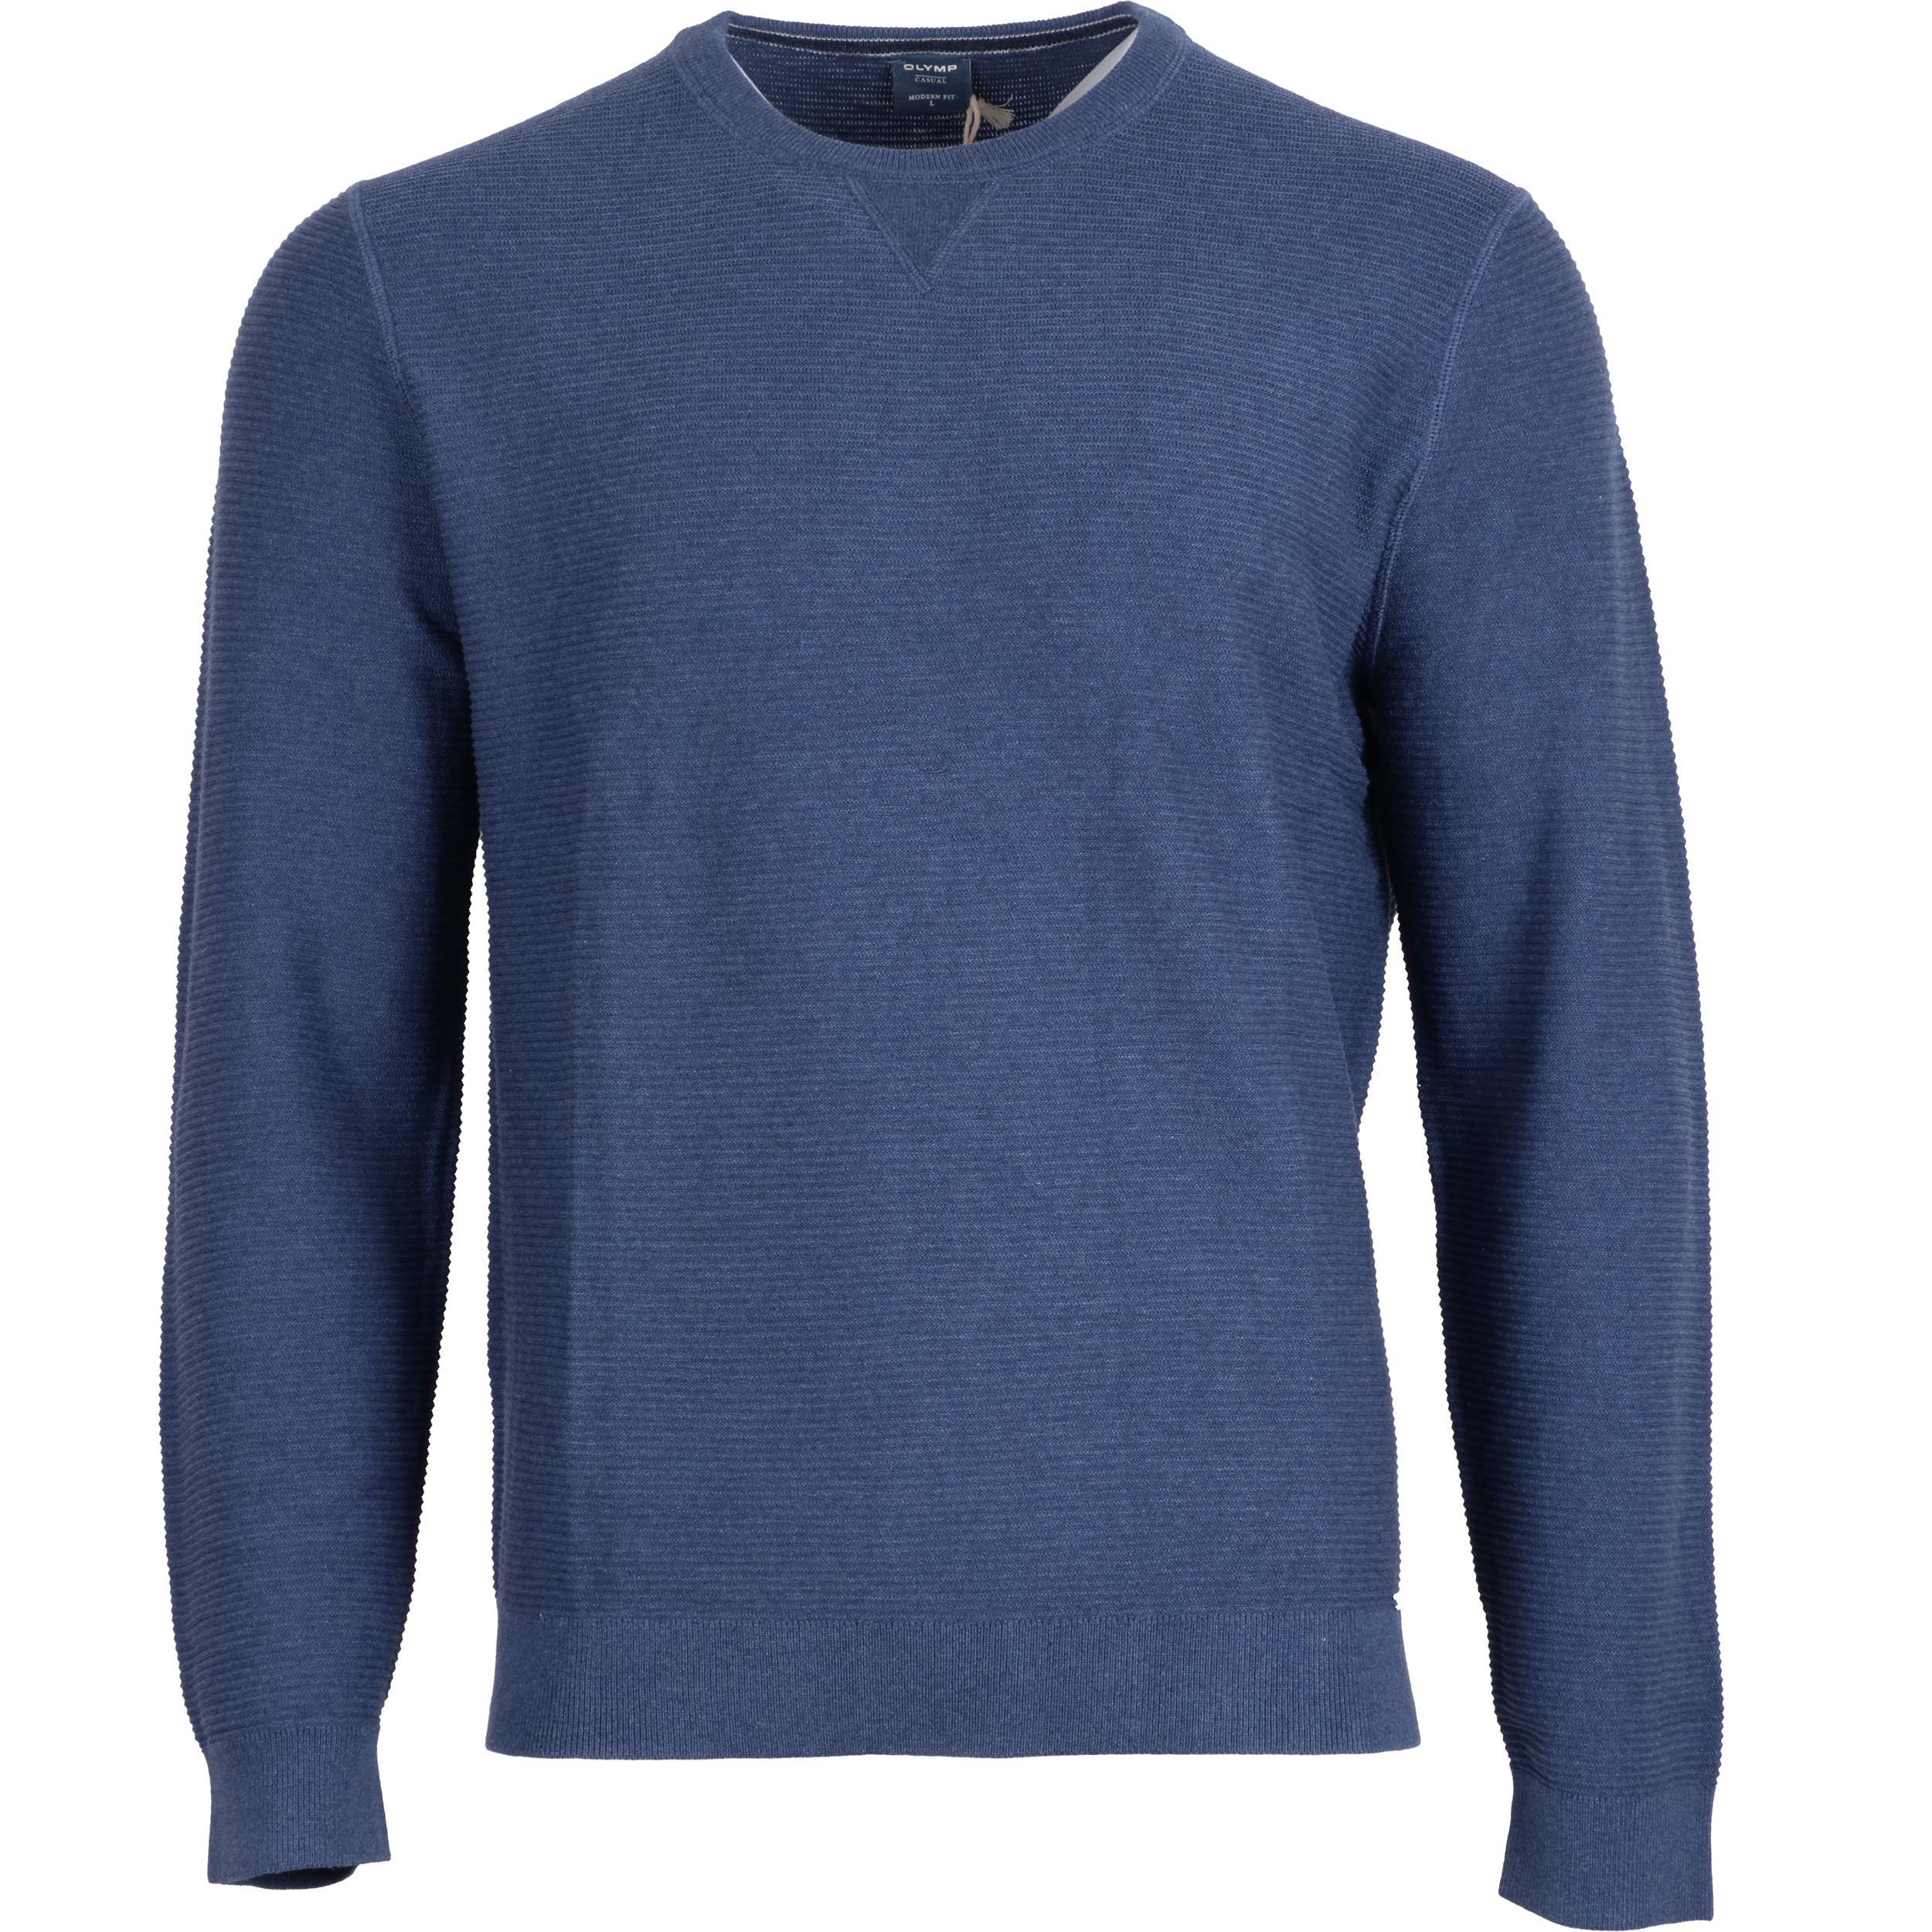 Olymp Herren Pullover modern fit Baumwolle XL blau